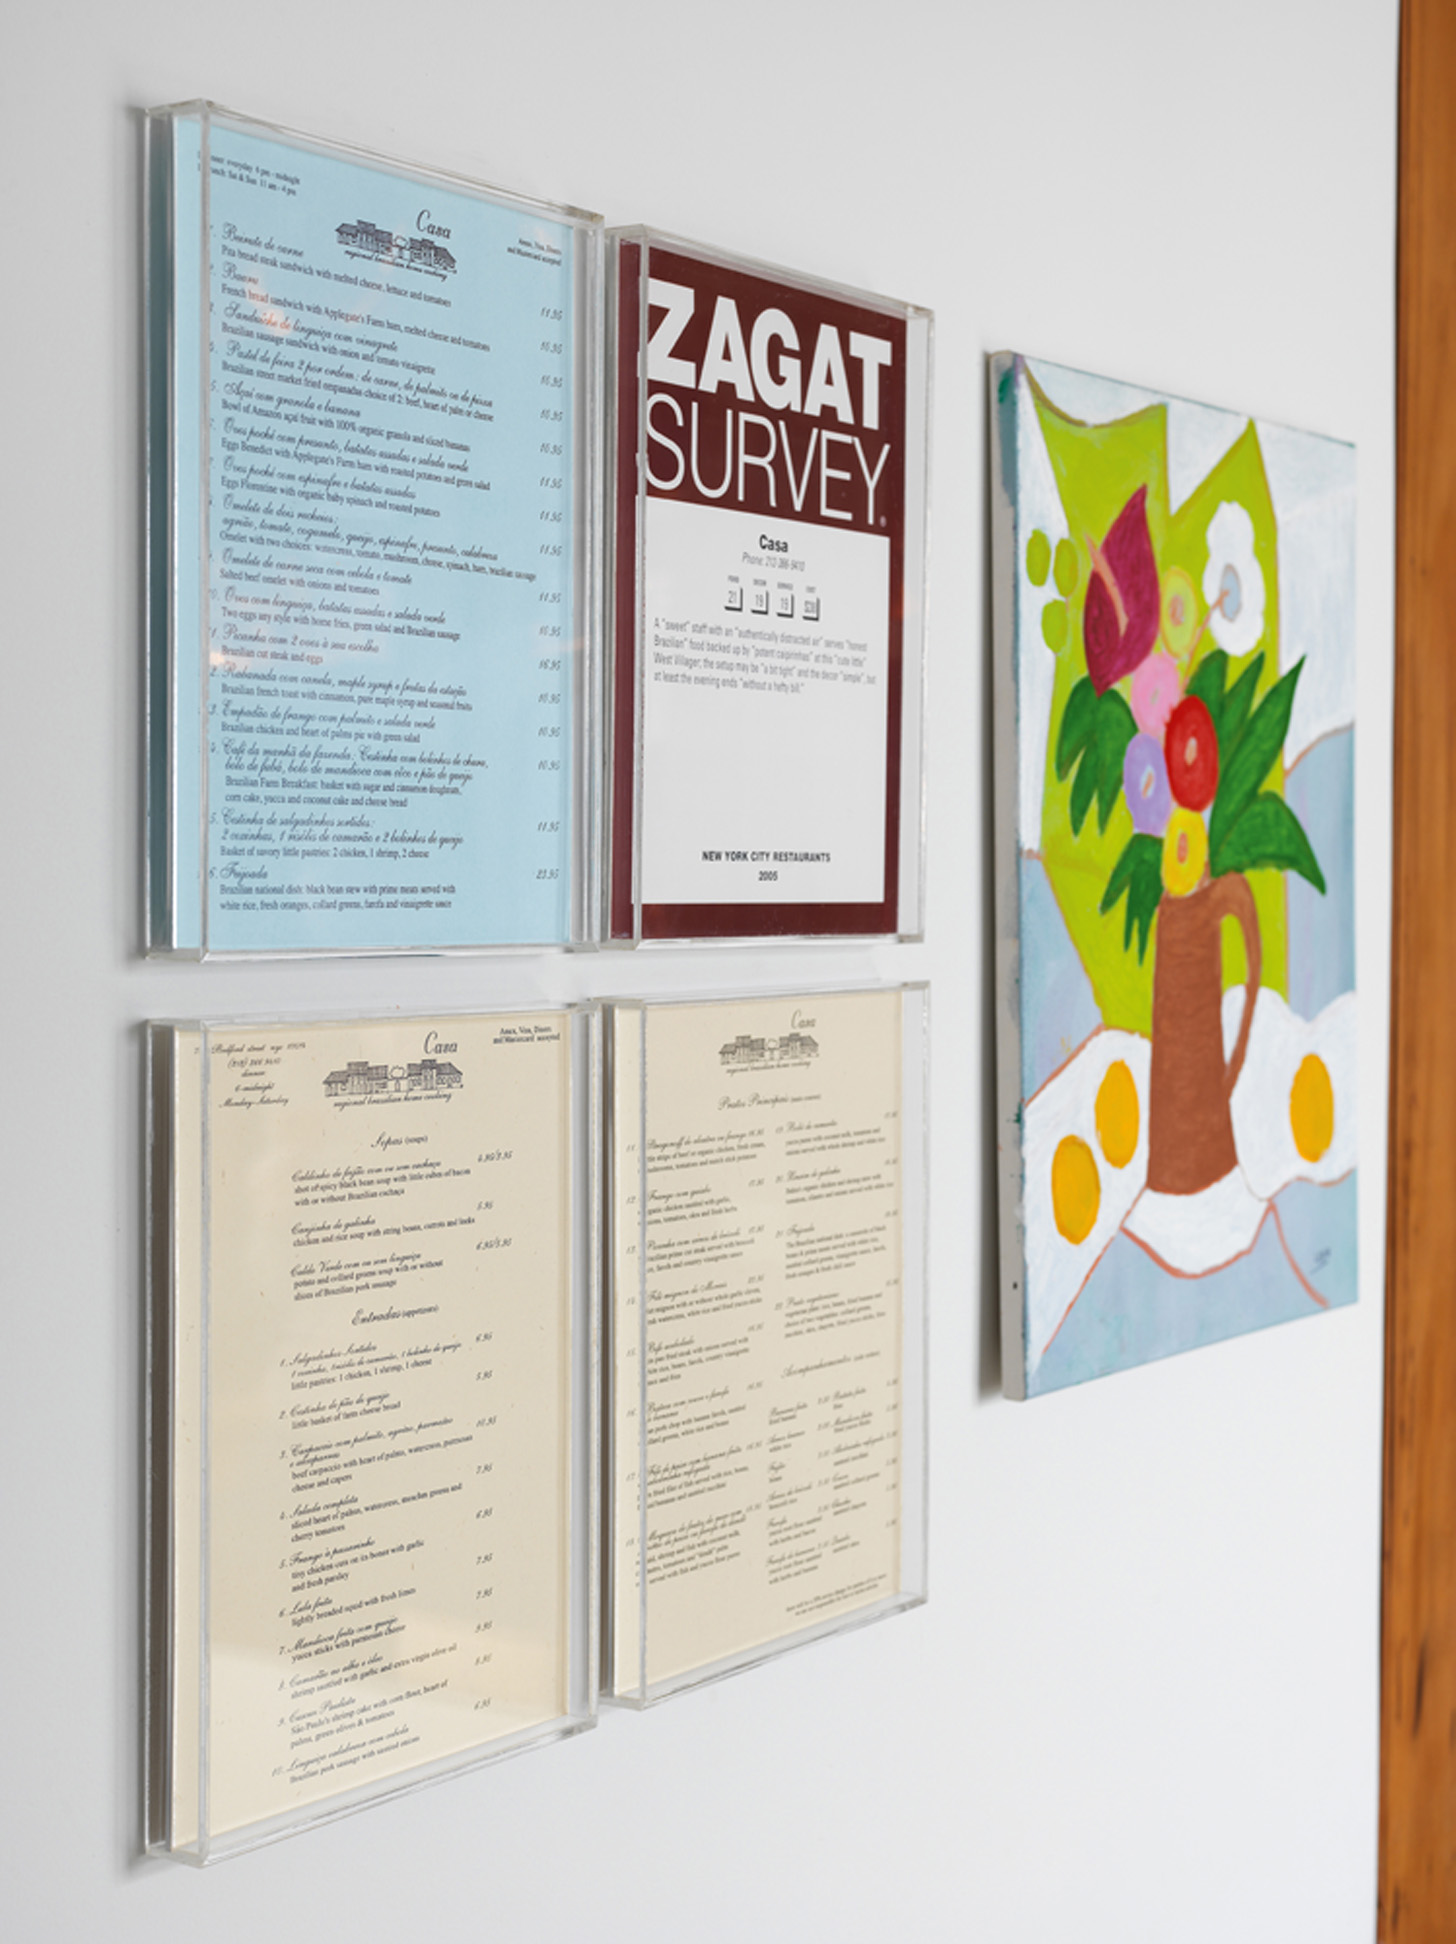 Troféu: Cardápios e pontuação no Ranking Zagat do Casa, restaurante em que Fabio é sócio em Nova York, ganharam destaque na caixa de acrílico